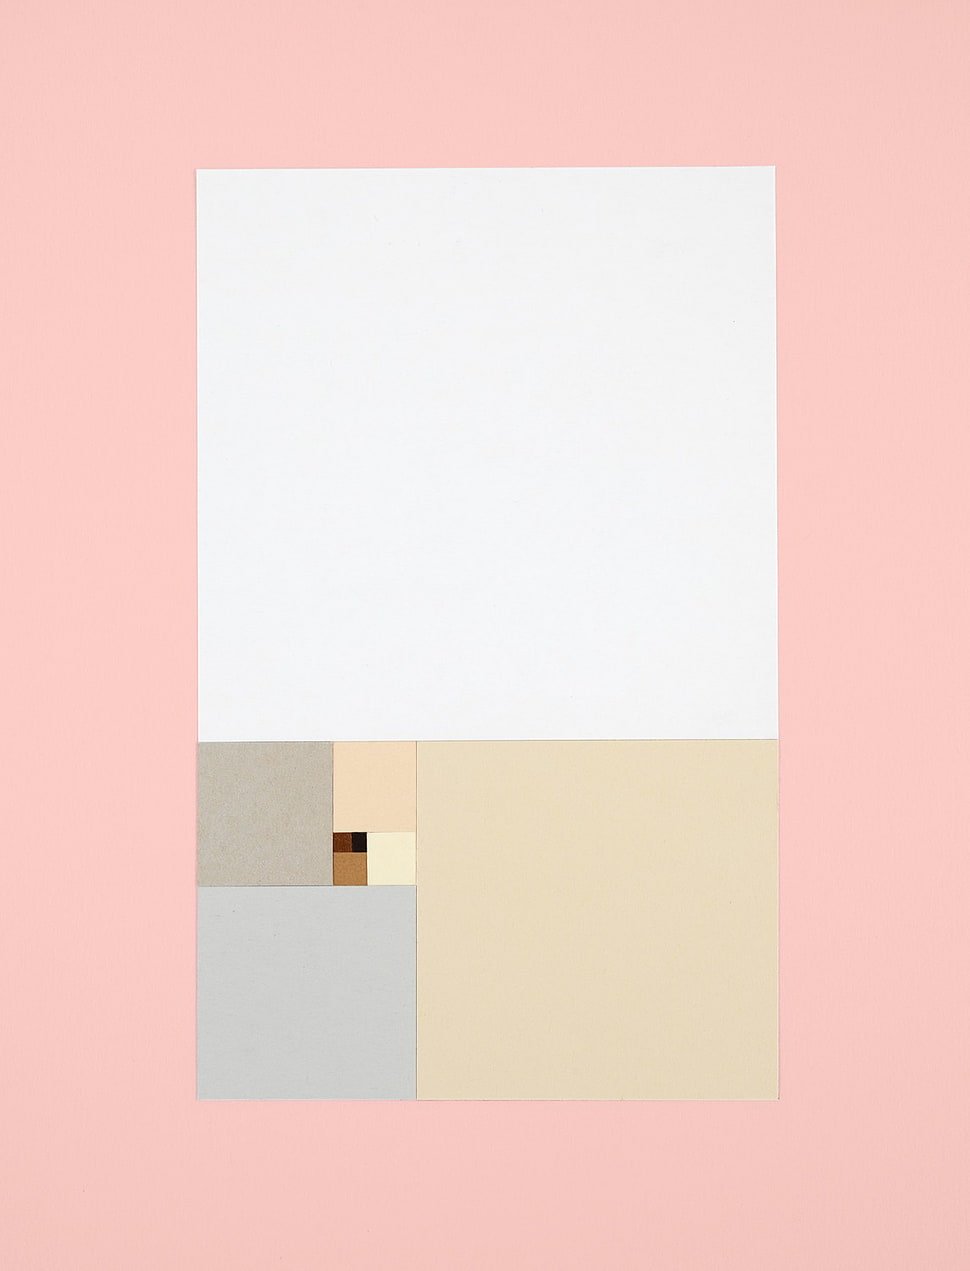 digital art, Android L, minimalism, pattern HD wallpaper